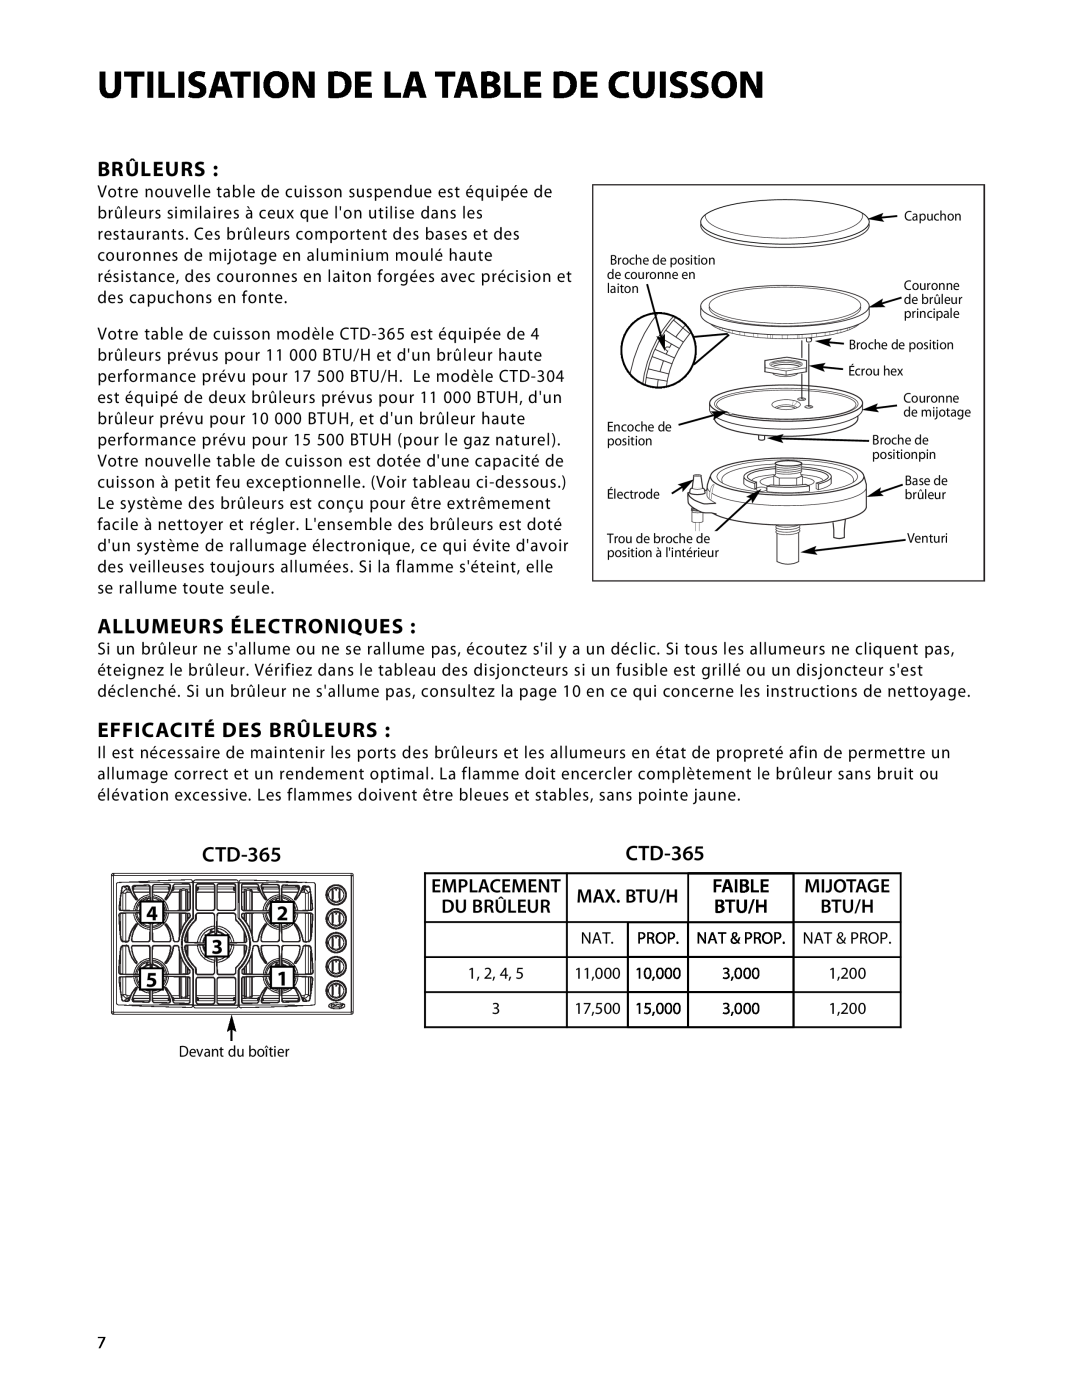 DCS CTD-365 Allumeurs Électroniques, Efficacité Des Brûleurs, Faible, Max. Btu/H, Emplacement, Mijotage, Du Brûleur 